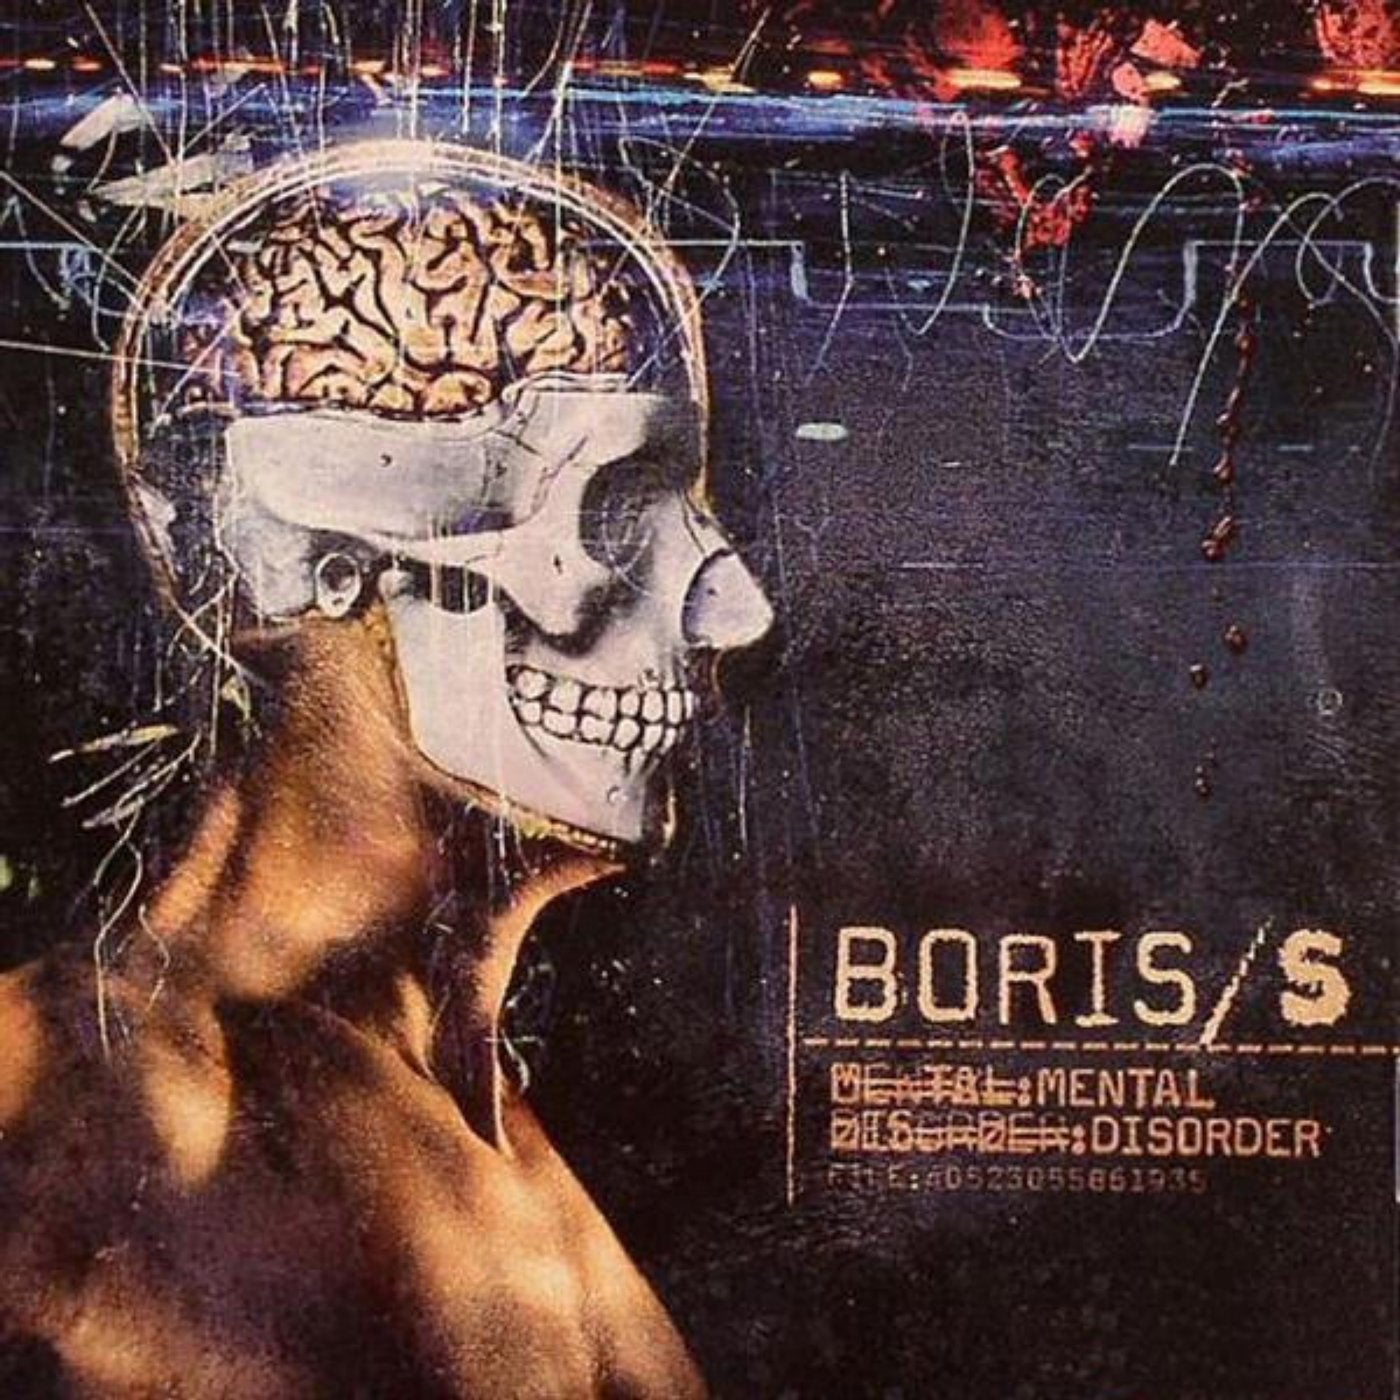 Ментальная обложки альбомов. Disorder 2. Geist des Staubes группа. Boris s. g - Secret Corps. Back boris